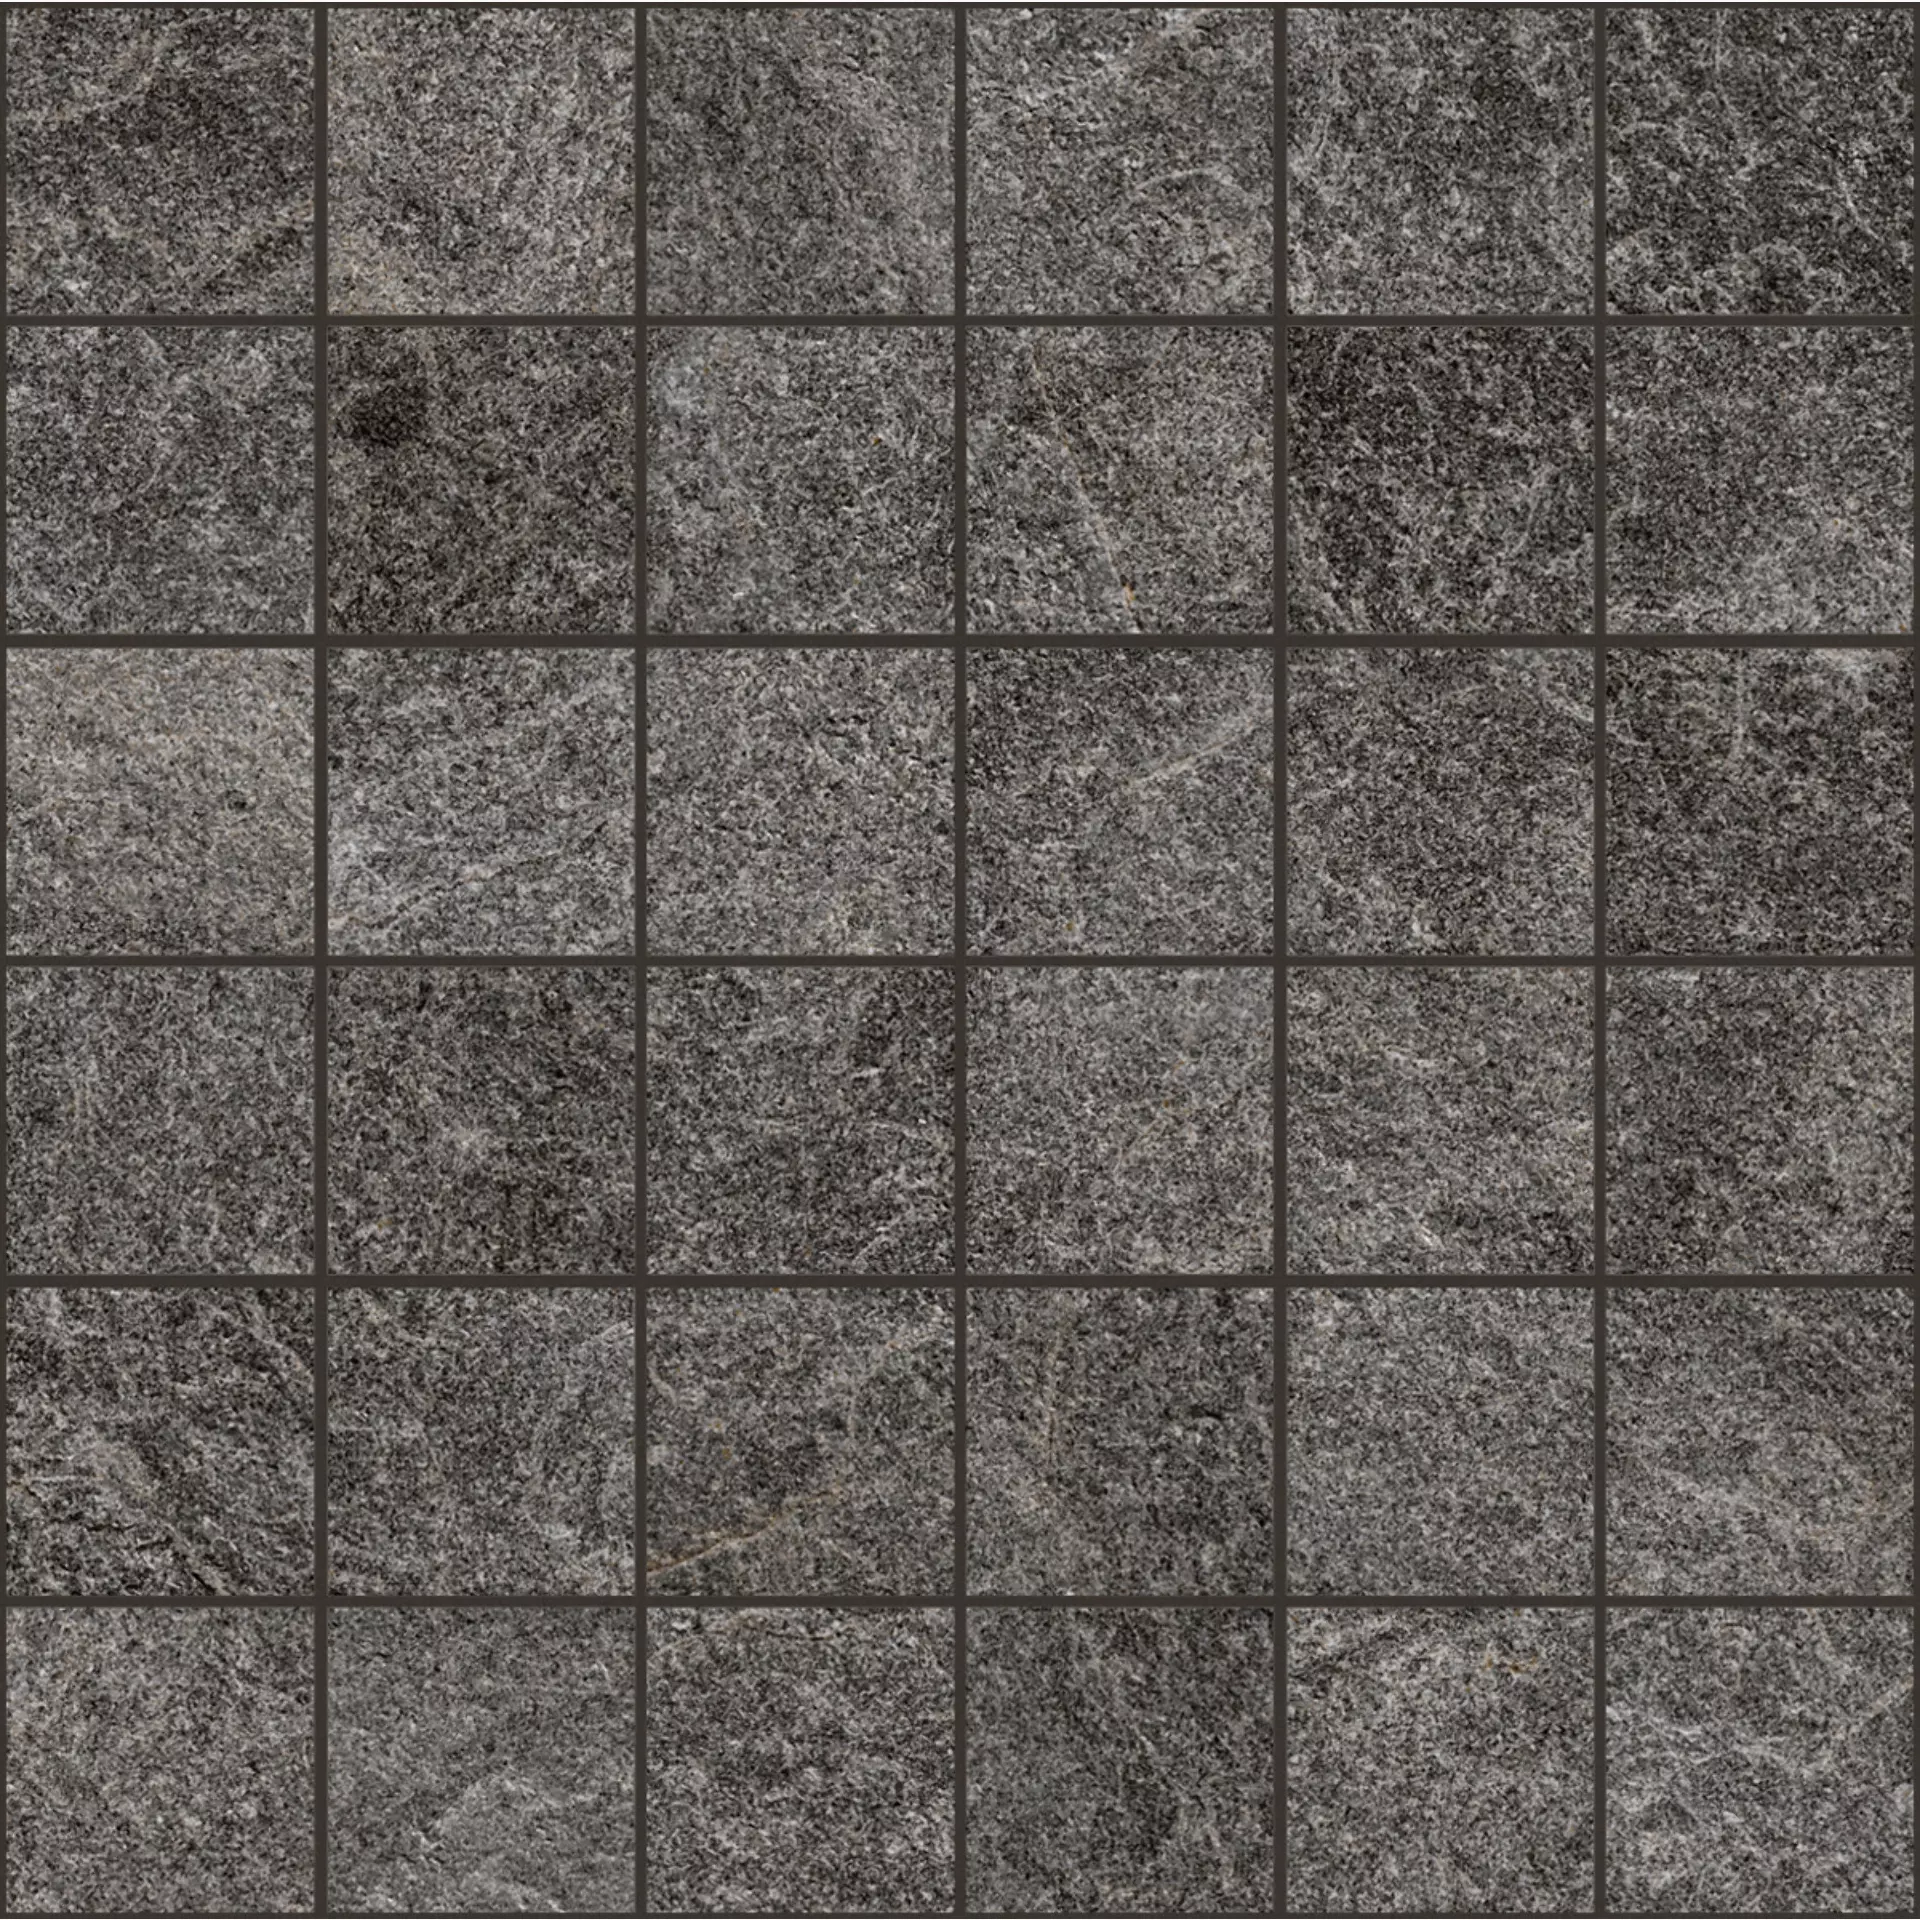 Bodenfliese,Wandfliese Marazzi Rocking Anthracite Naturale – Matt Anthracite M1HN matt natur 30x30cm Mosaik 9,5mm